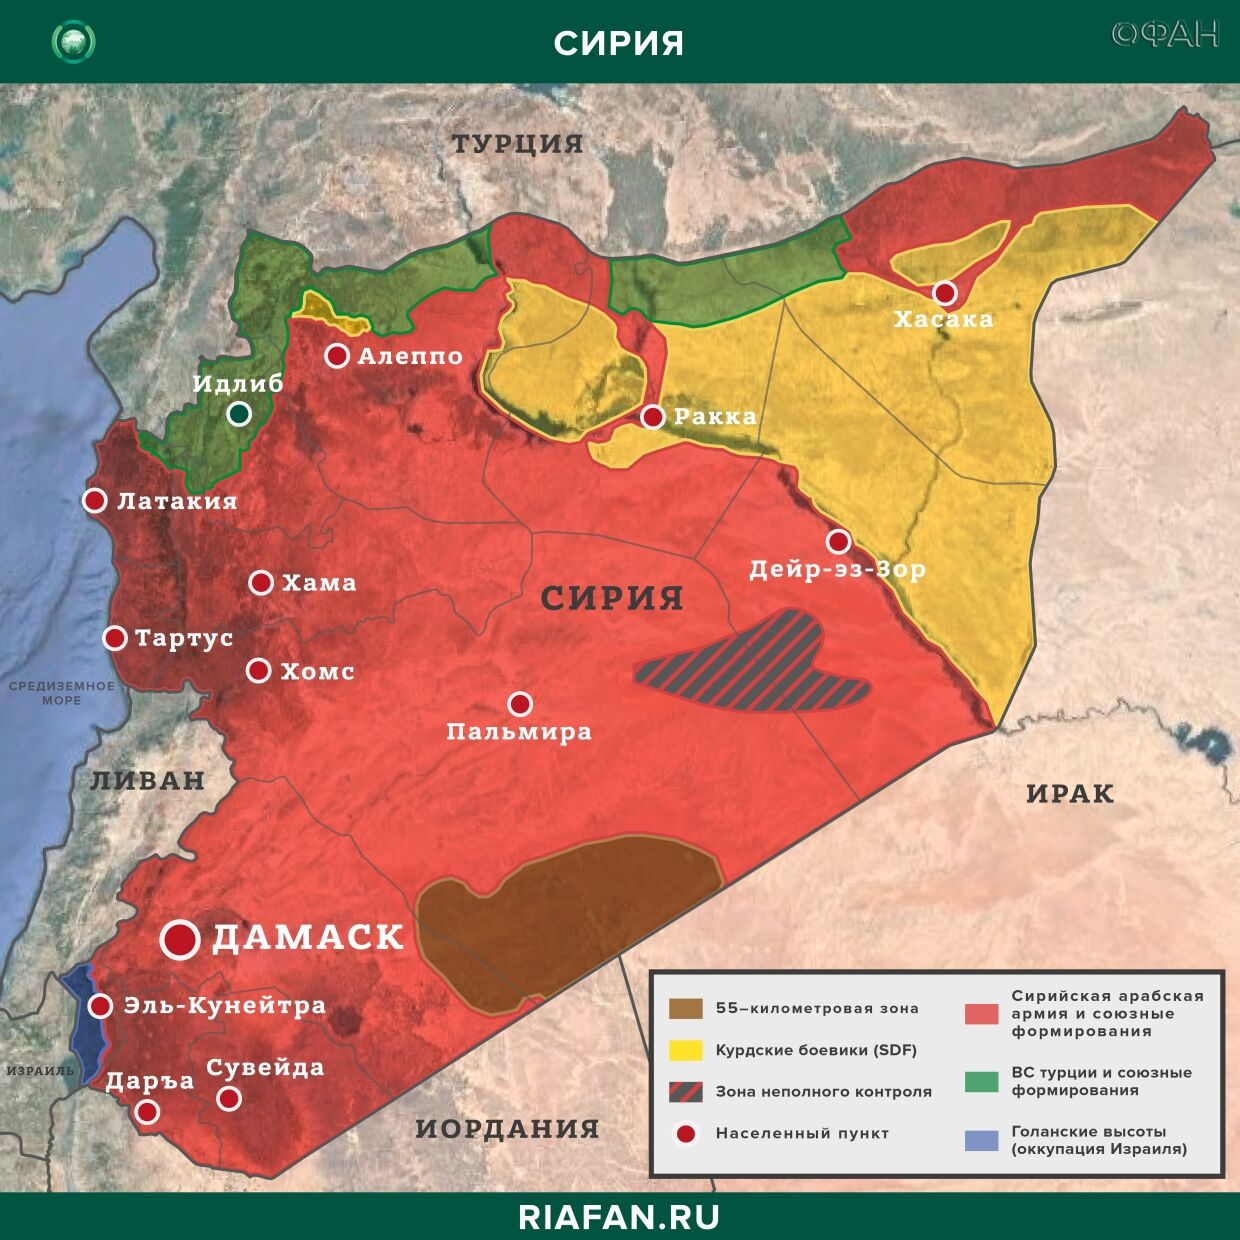 Nouvelles de Syrie 22 Mars 07.00: САА проводит разведку в Идлибе, в Дейр-эз-Зоре курдские боевики застрелили гражданского